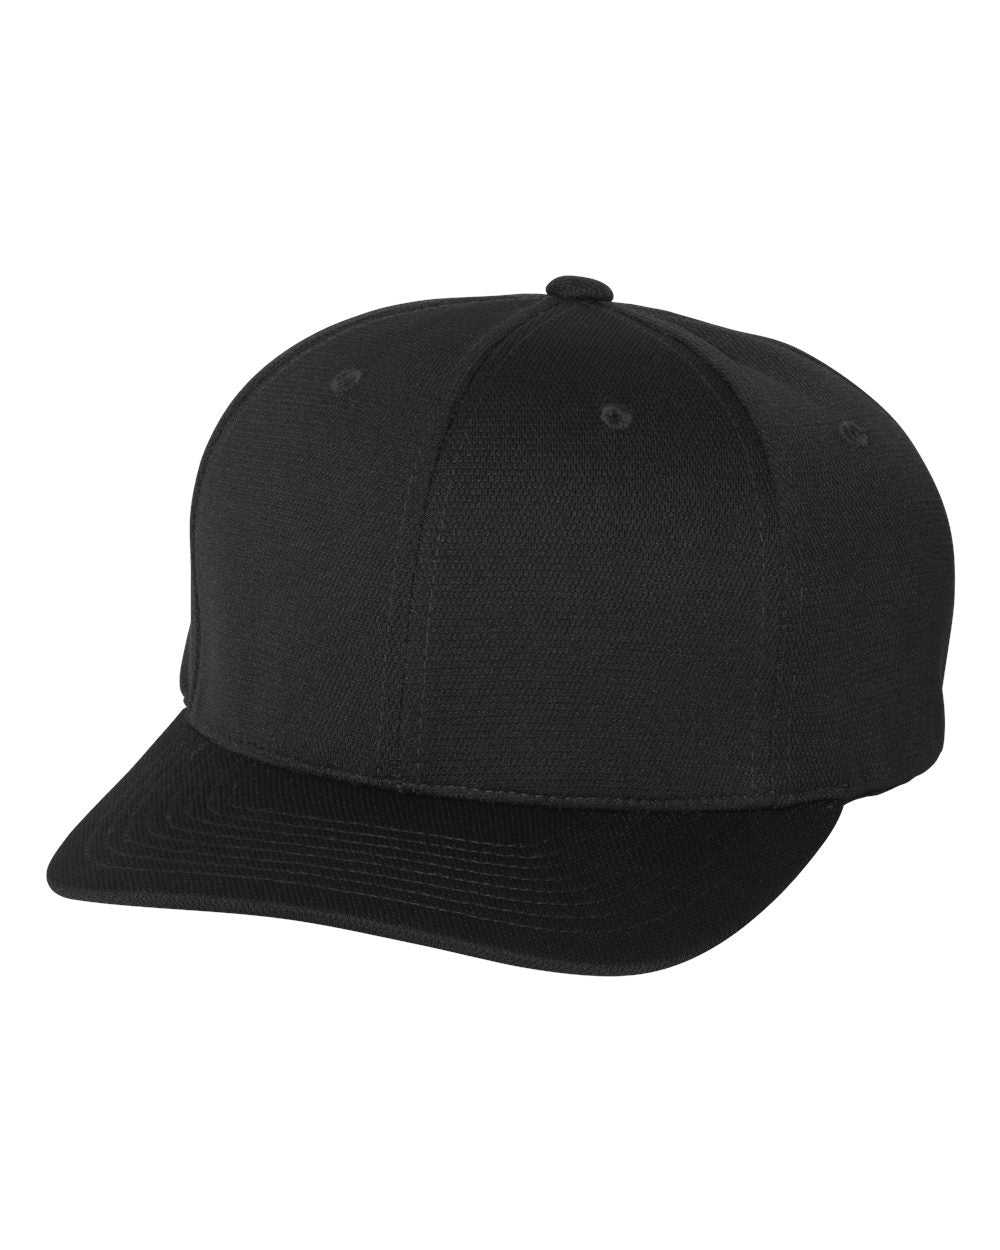 Flexfit 6597 Cool &amp; Dry Sport Cap - Black - HIT a Double